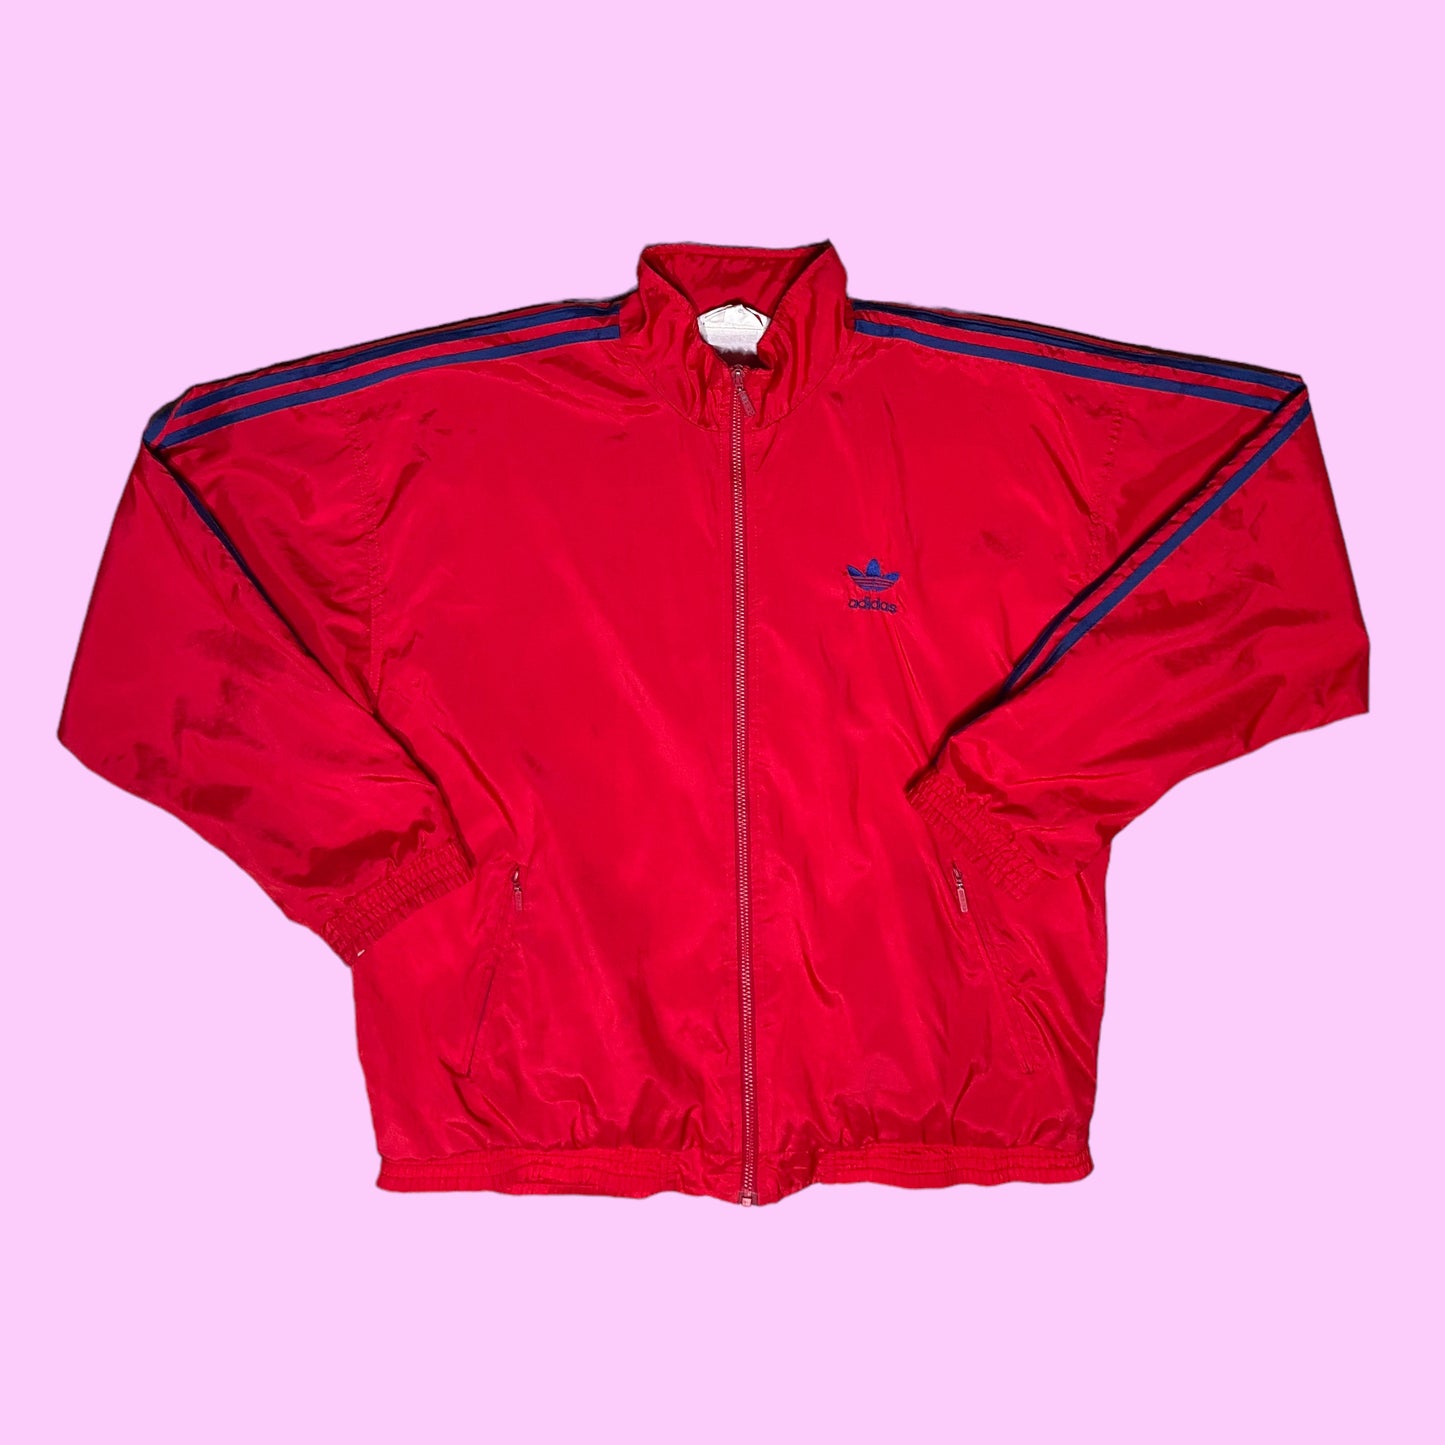 Vintage Adidas track jacket - L